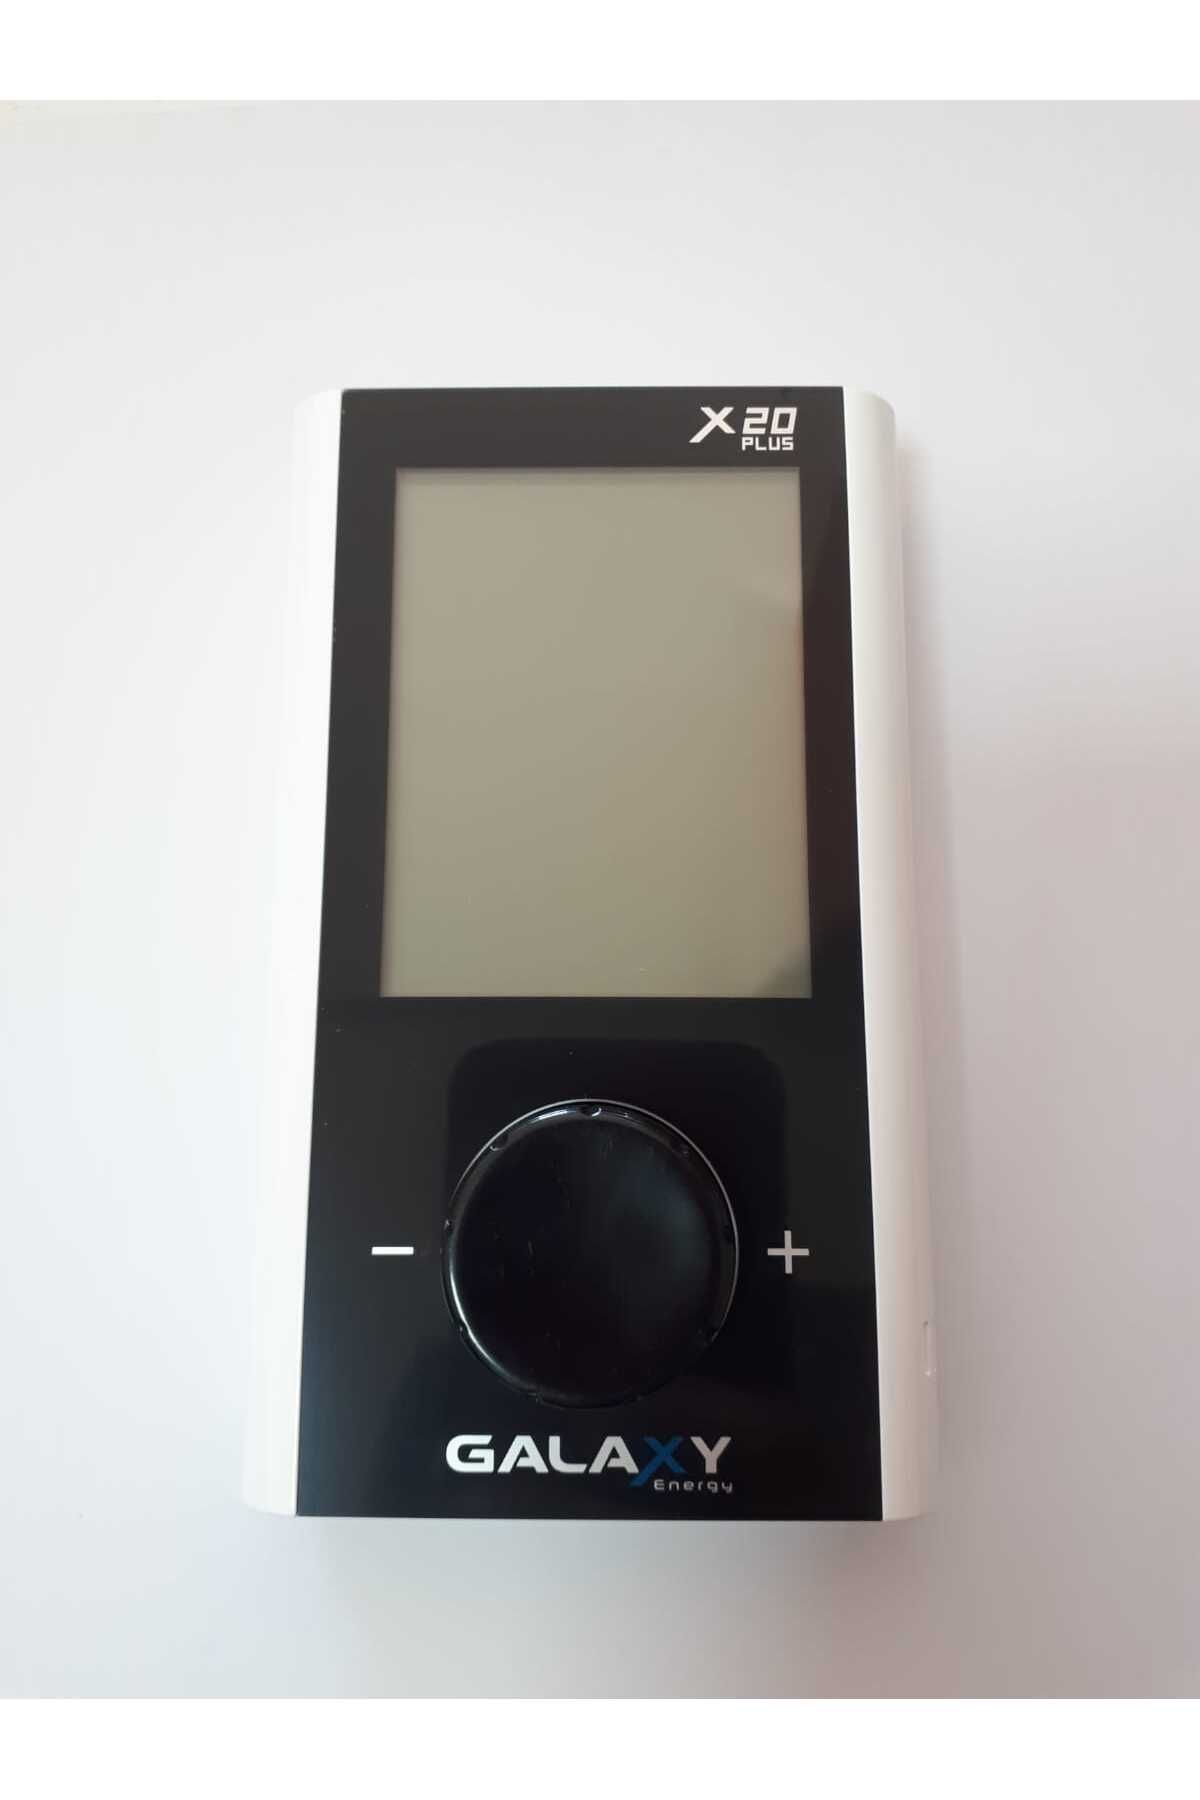 Galaxy Energy X20 Kablosuz Oda Termostatı Siyah